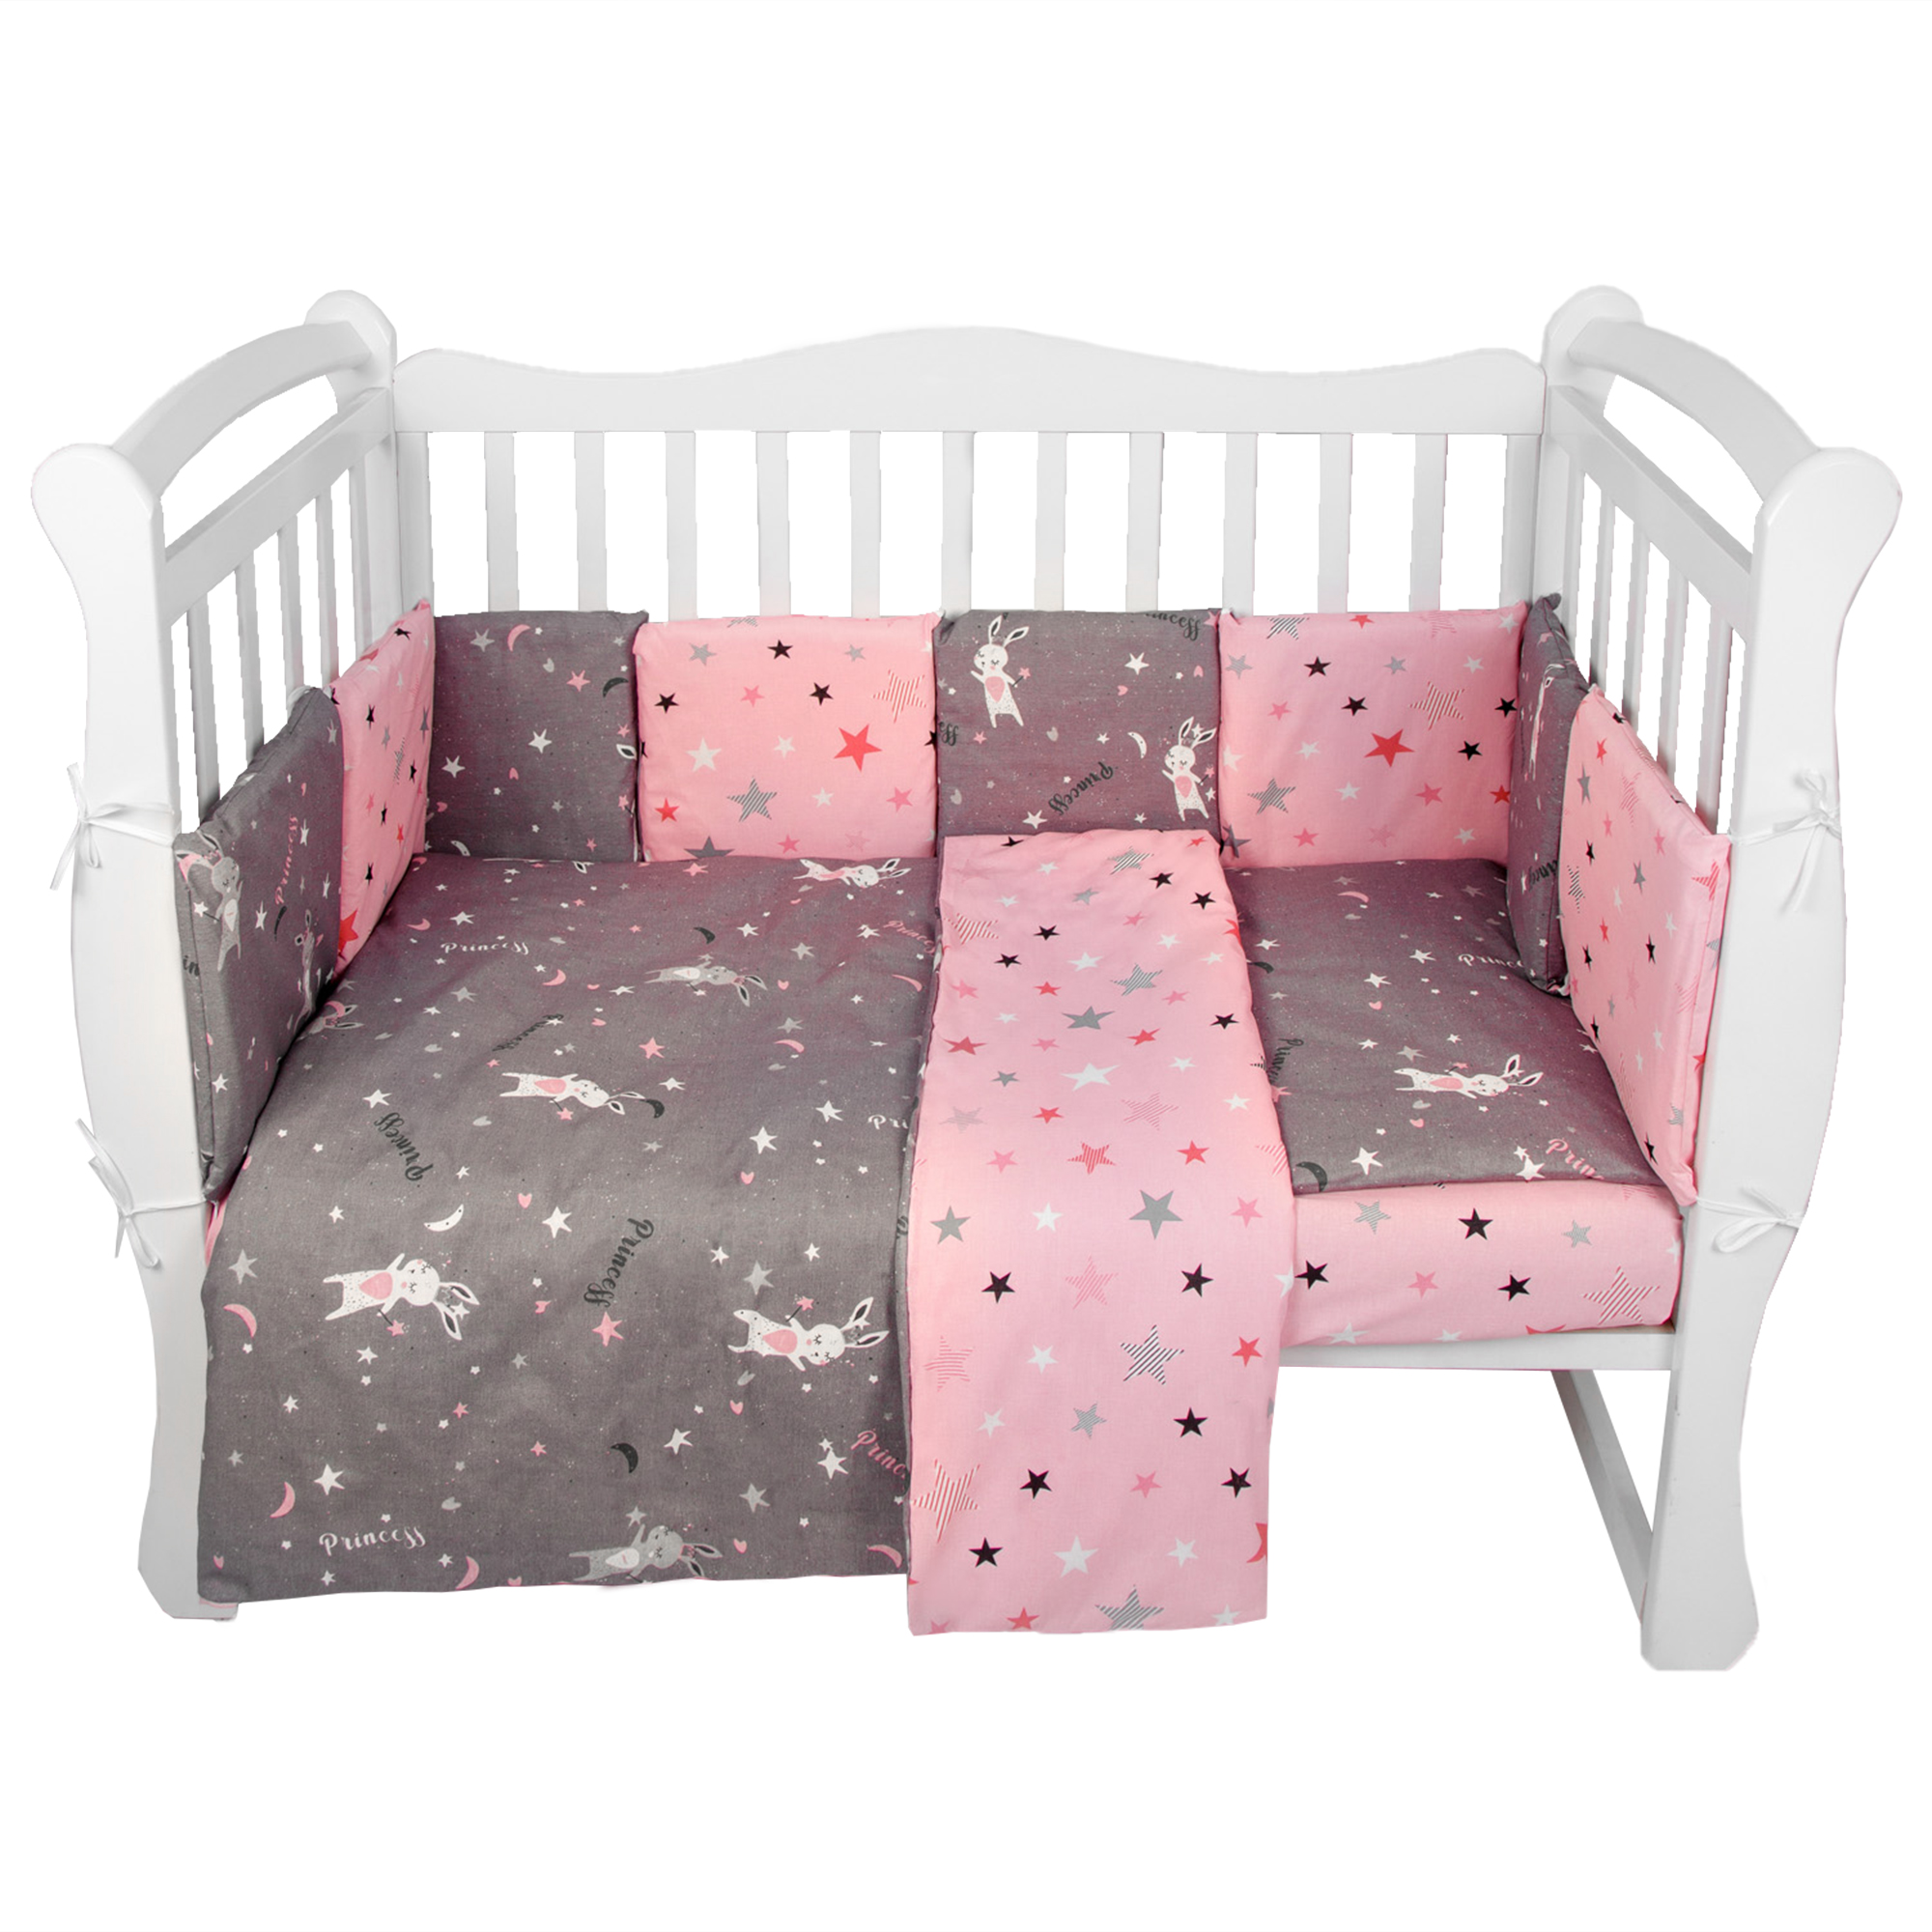 Комплект в кроватку AmaroBaby 15 предметов Premium Princess серый/розовый комплект в кроватку amarobaby мышата в облаках 15 предметов